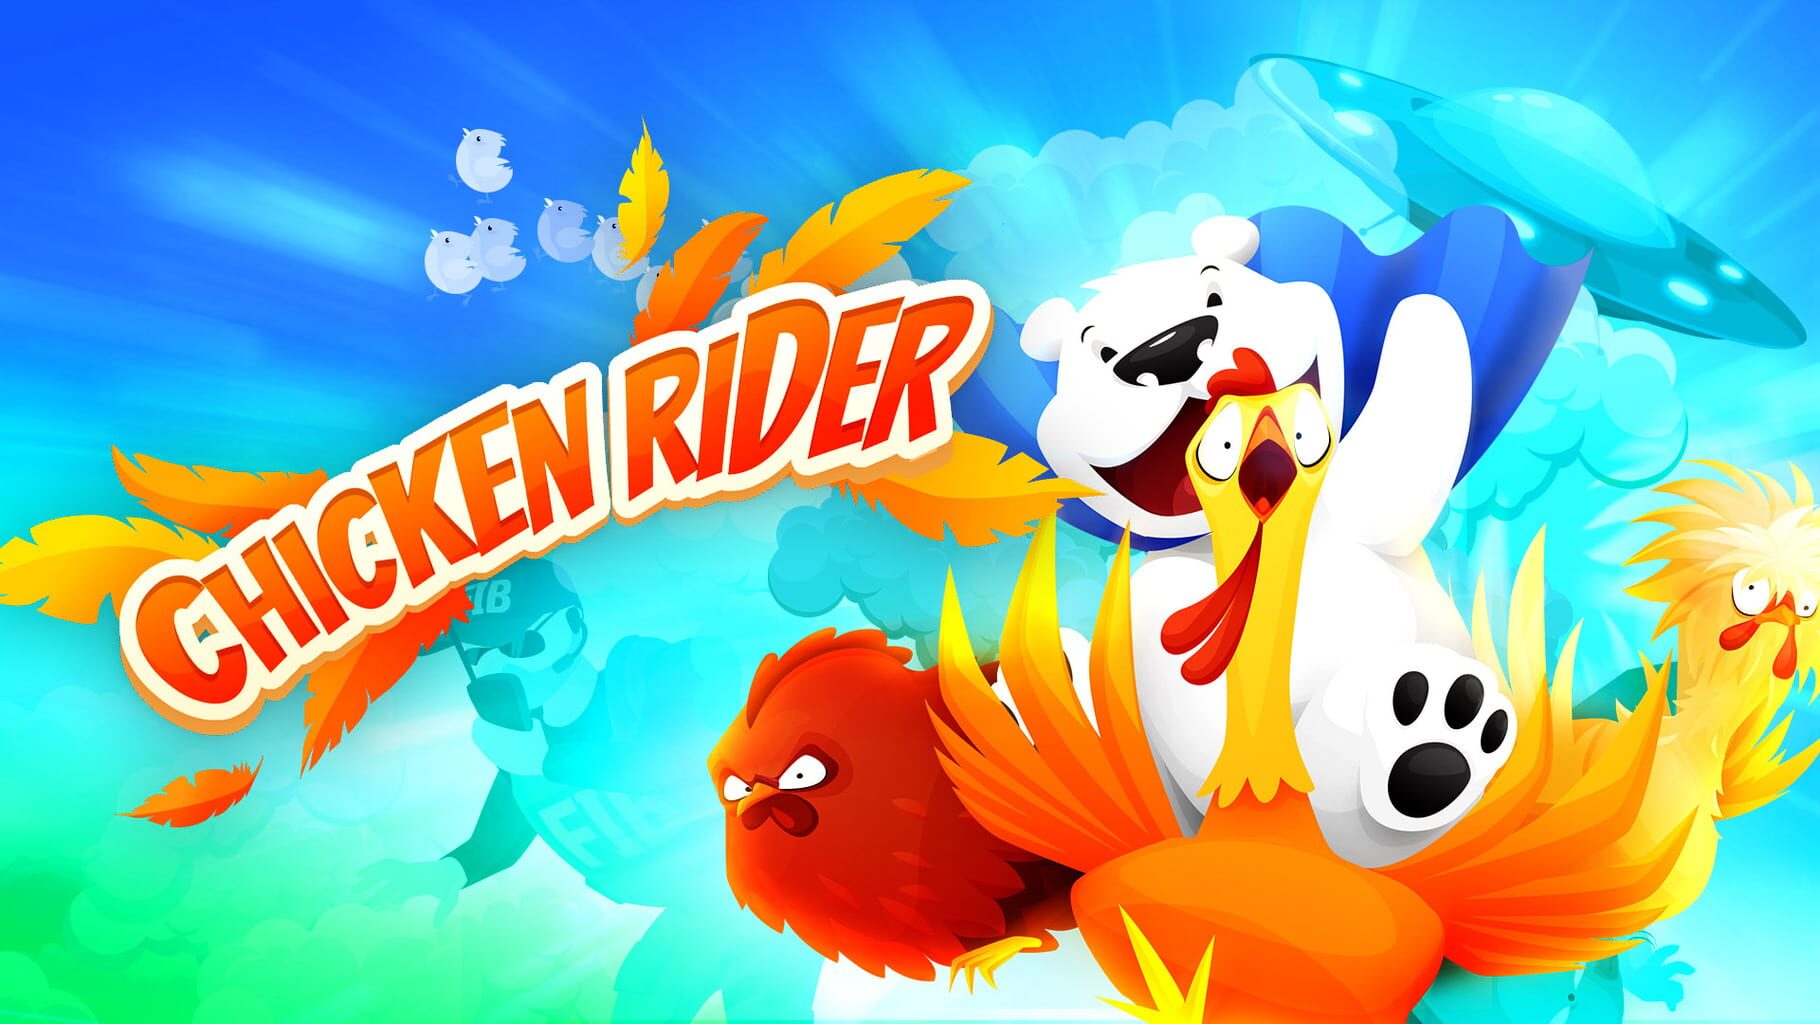 Chicken Rider artwork